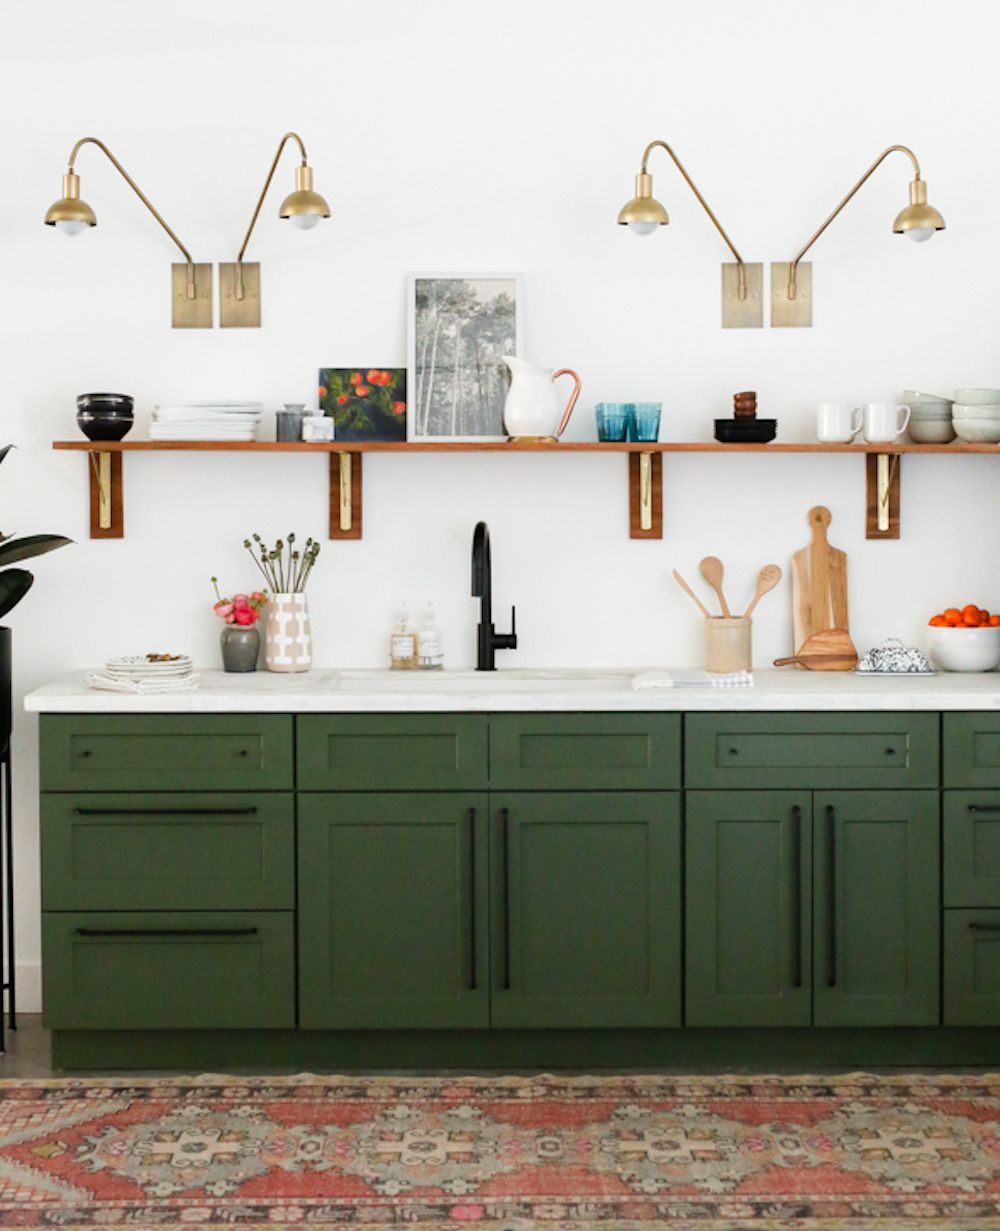 Green kitchen cabinet in kitchenette